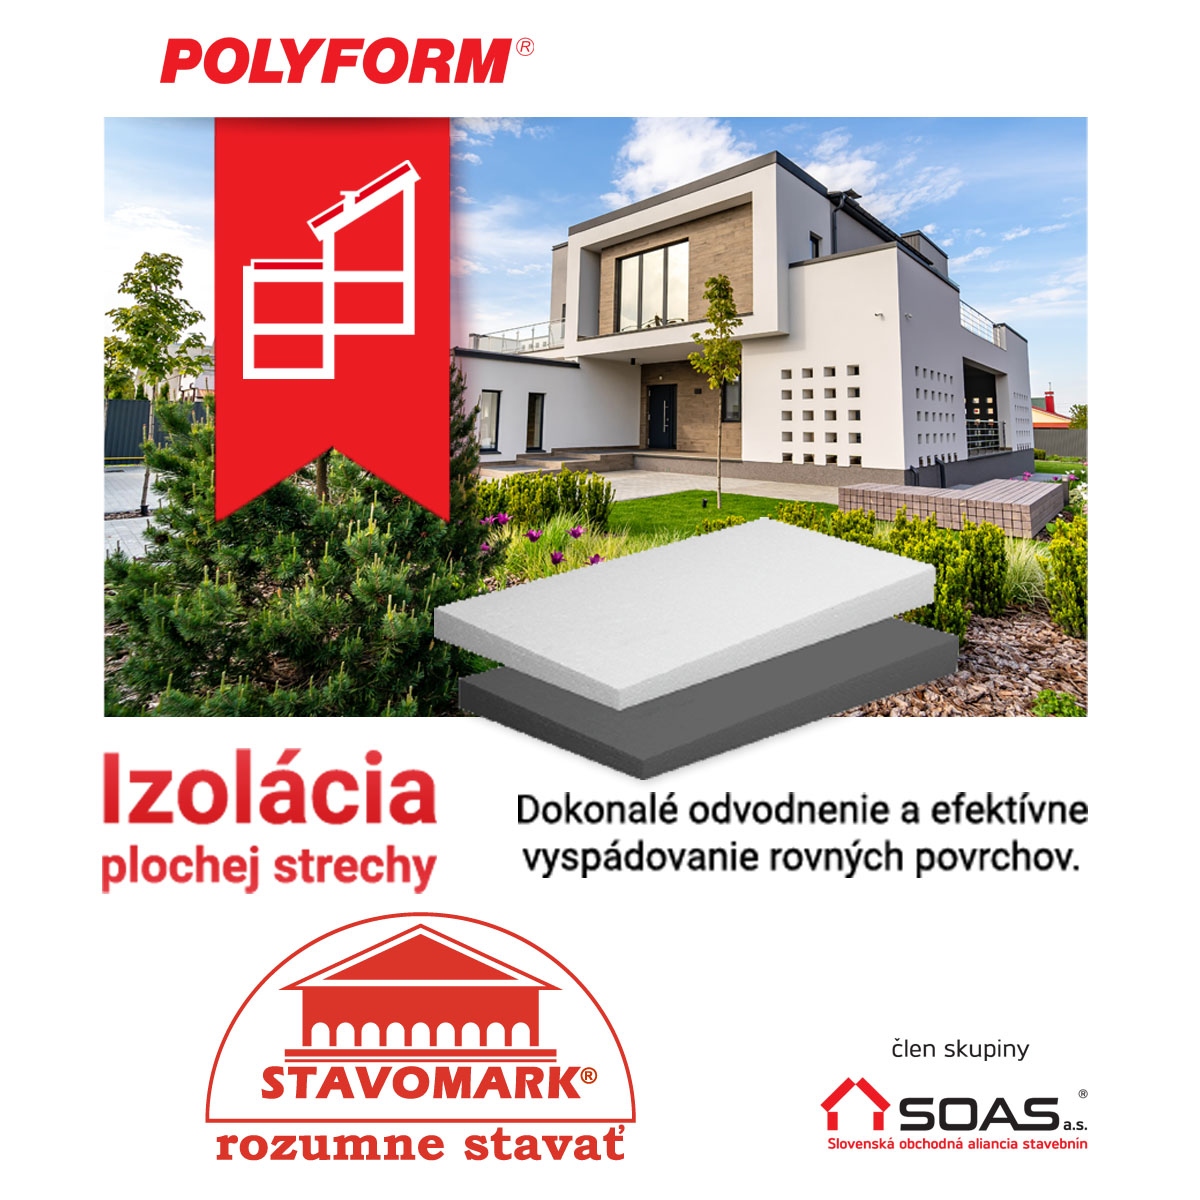 Izolácia strechy efektívne a pohodlne vďaka POLYFORM